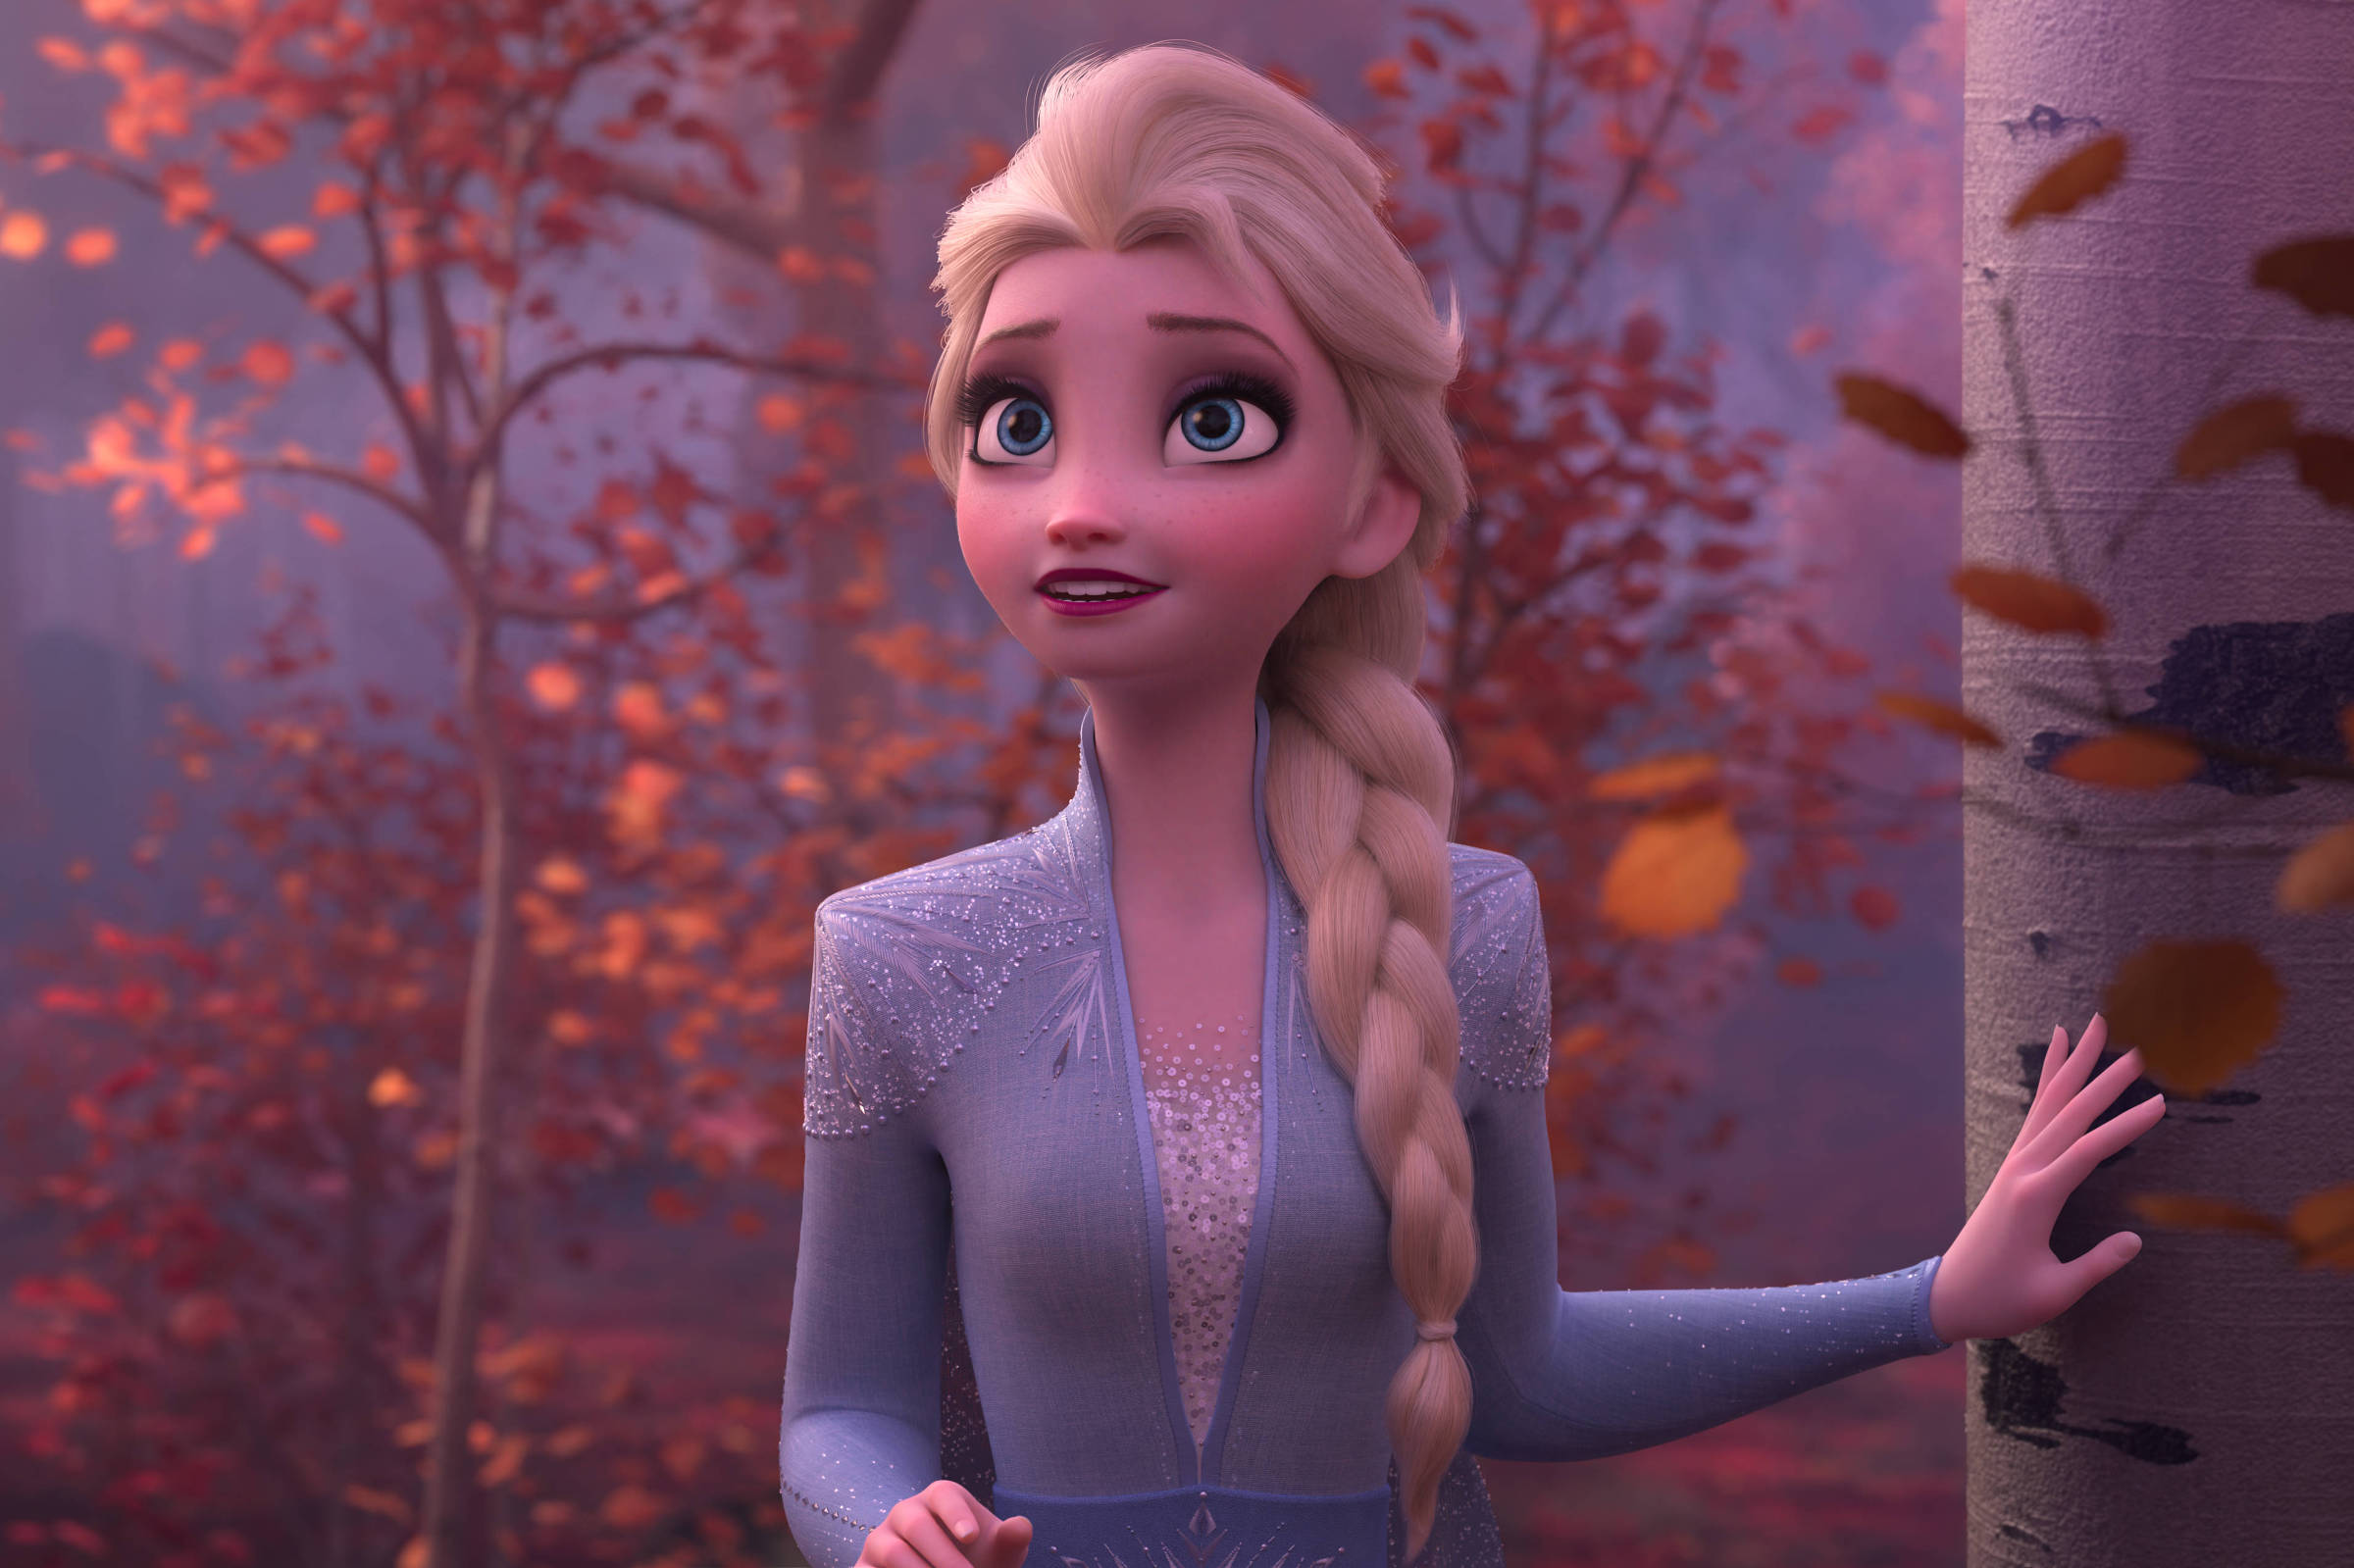 Frozen' estreia no Brasil em 3 de janeiro após liderar bilheteria